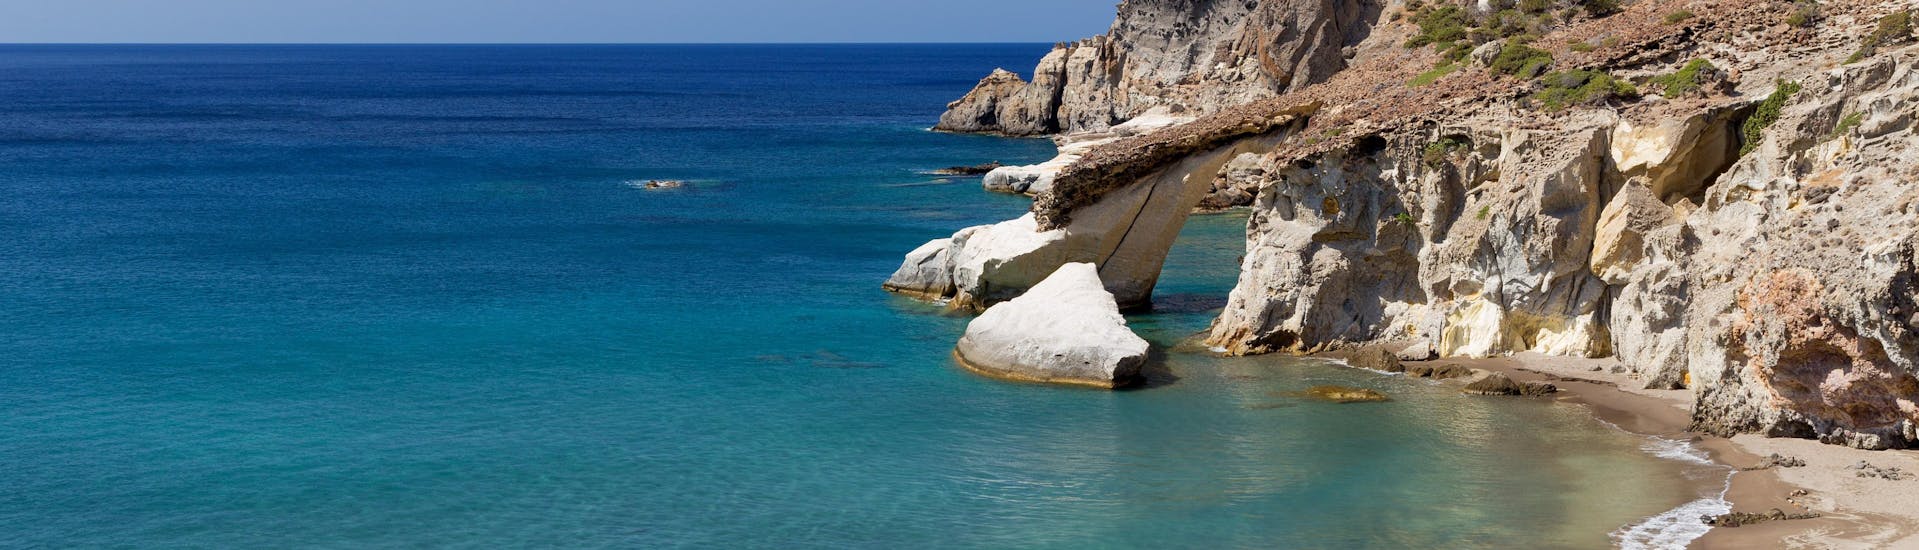 Vista de la hermosa playa de Gerontas, que podrá descubrir durante un paseo en barco por la isla de Milos.